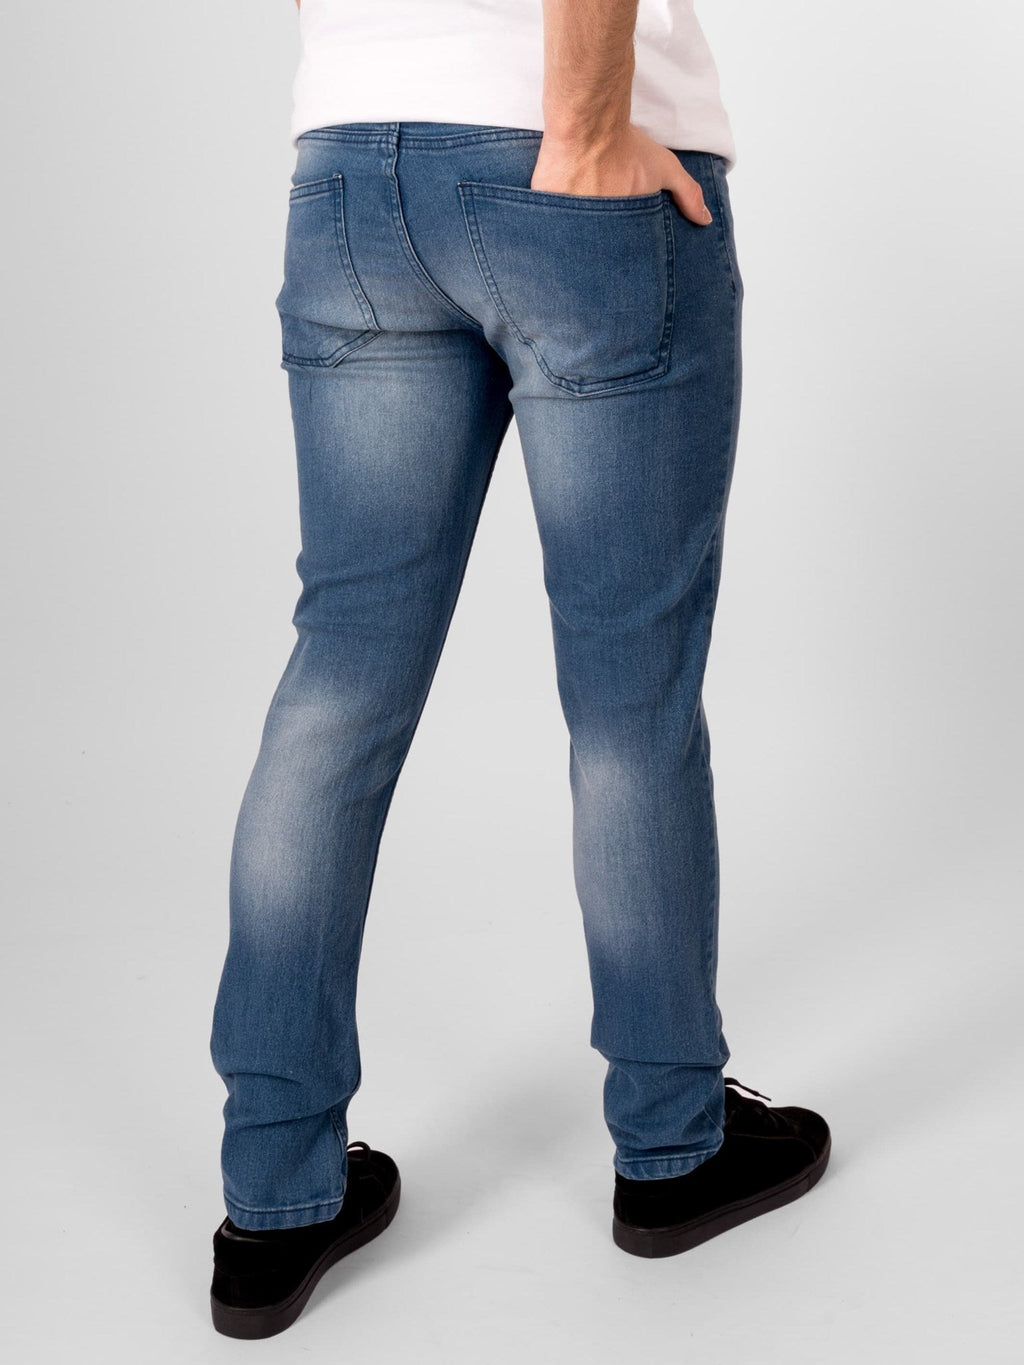 Les jeans de performance originaux - Denim Blue